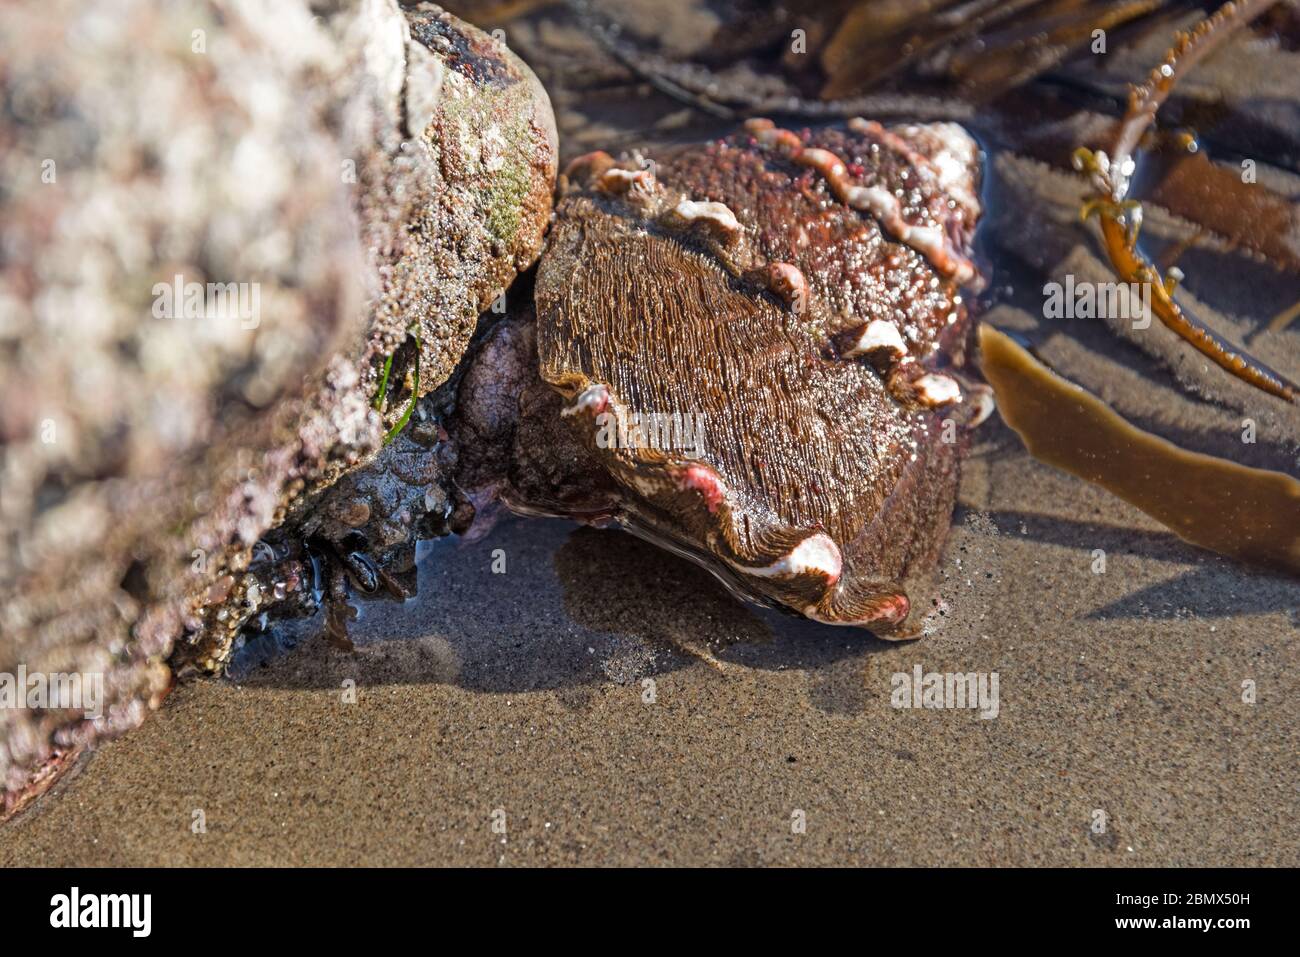 Live-Meeresschnecke (Megastraea undosa) mit dem dicken braunen, haarigen Periostracum, Leo Carrillo Beach, Malibu, Kalifornien. Stockfoto